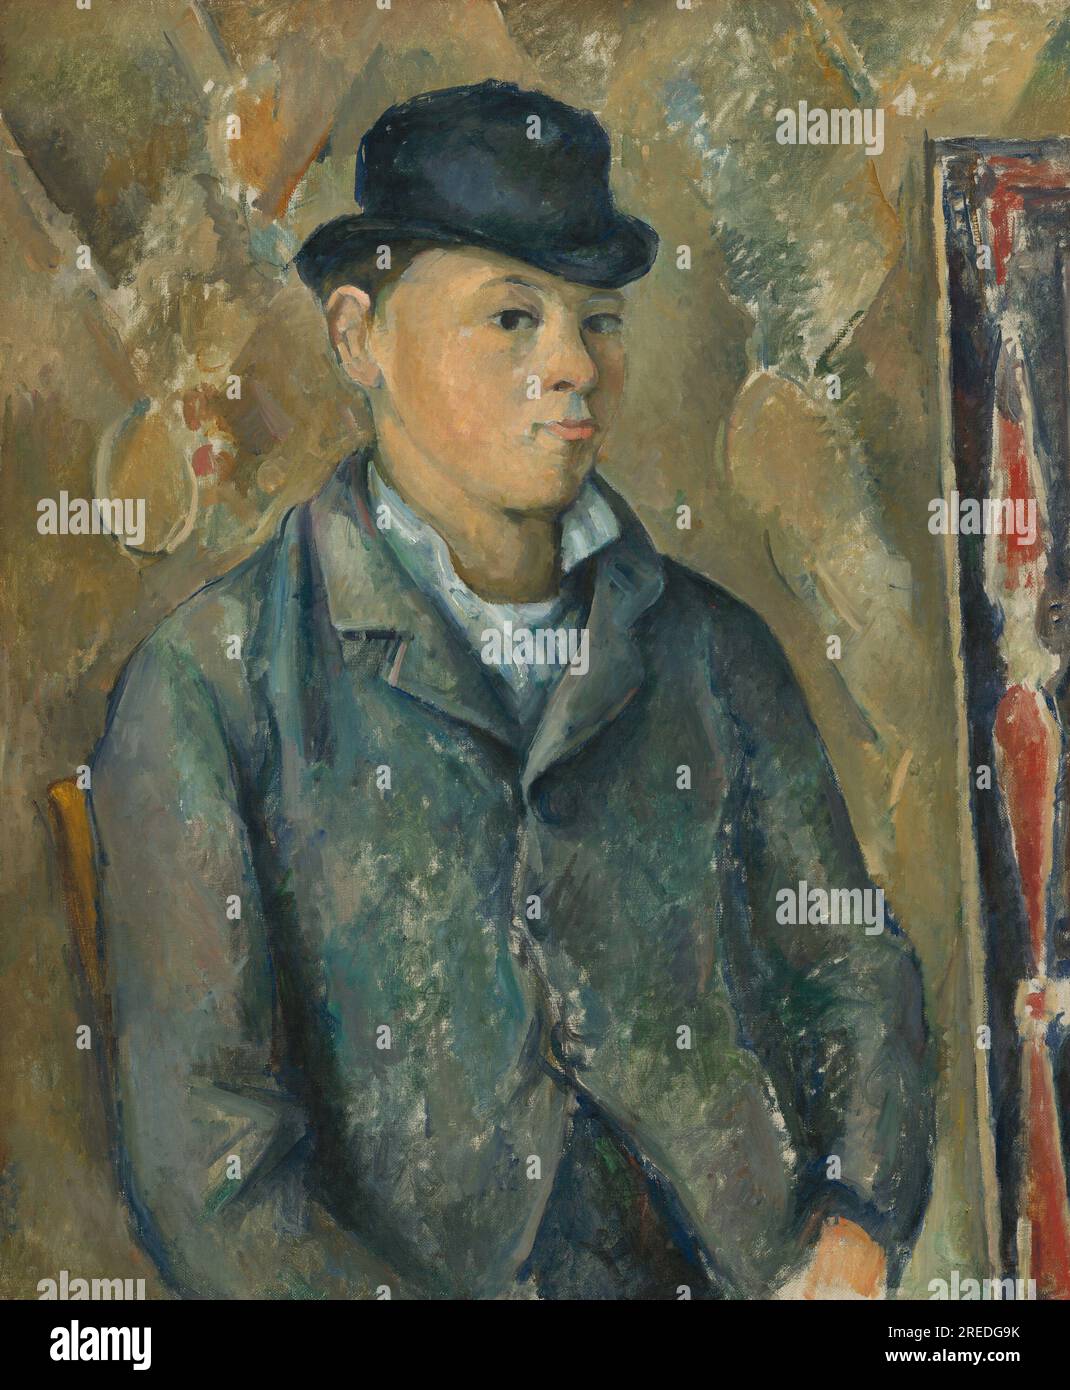 Titolo: Il figlio dell'artista, Paul Creatore: Paul Cézanne Data: 1881-1882 dimensioni: 65 x 54 cm Medio: Olio su tela luogo: National Gallery of Art, Washington, D.C. Foto Stock